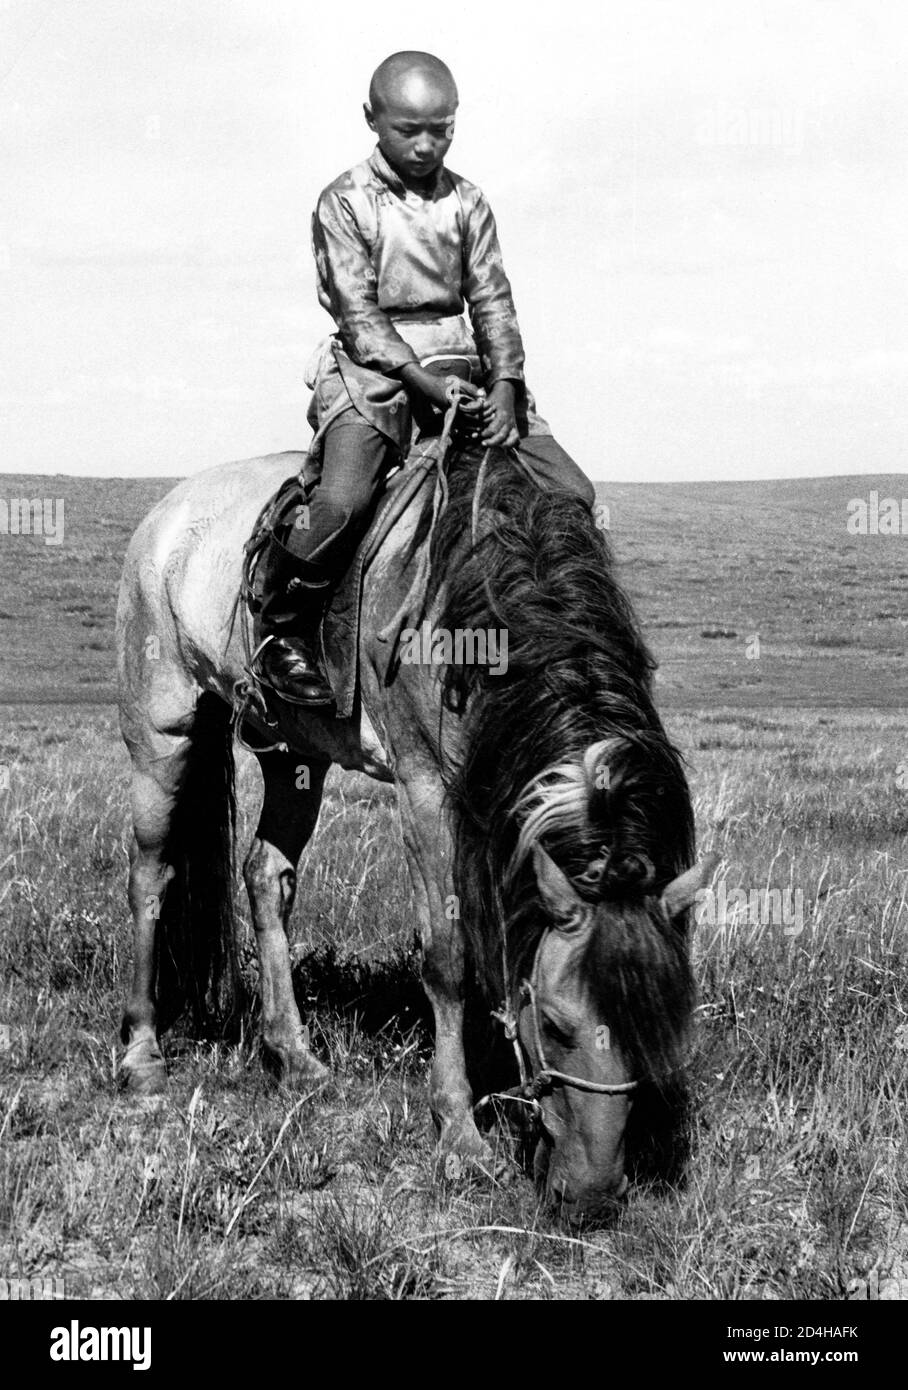 Un garçon mongol sur un cheval dans la steppe, région de Salchit, photo prise en 1977 Banque D'Images